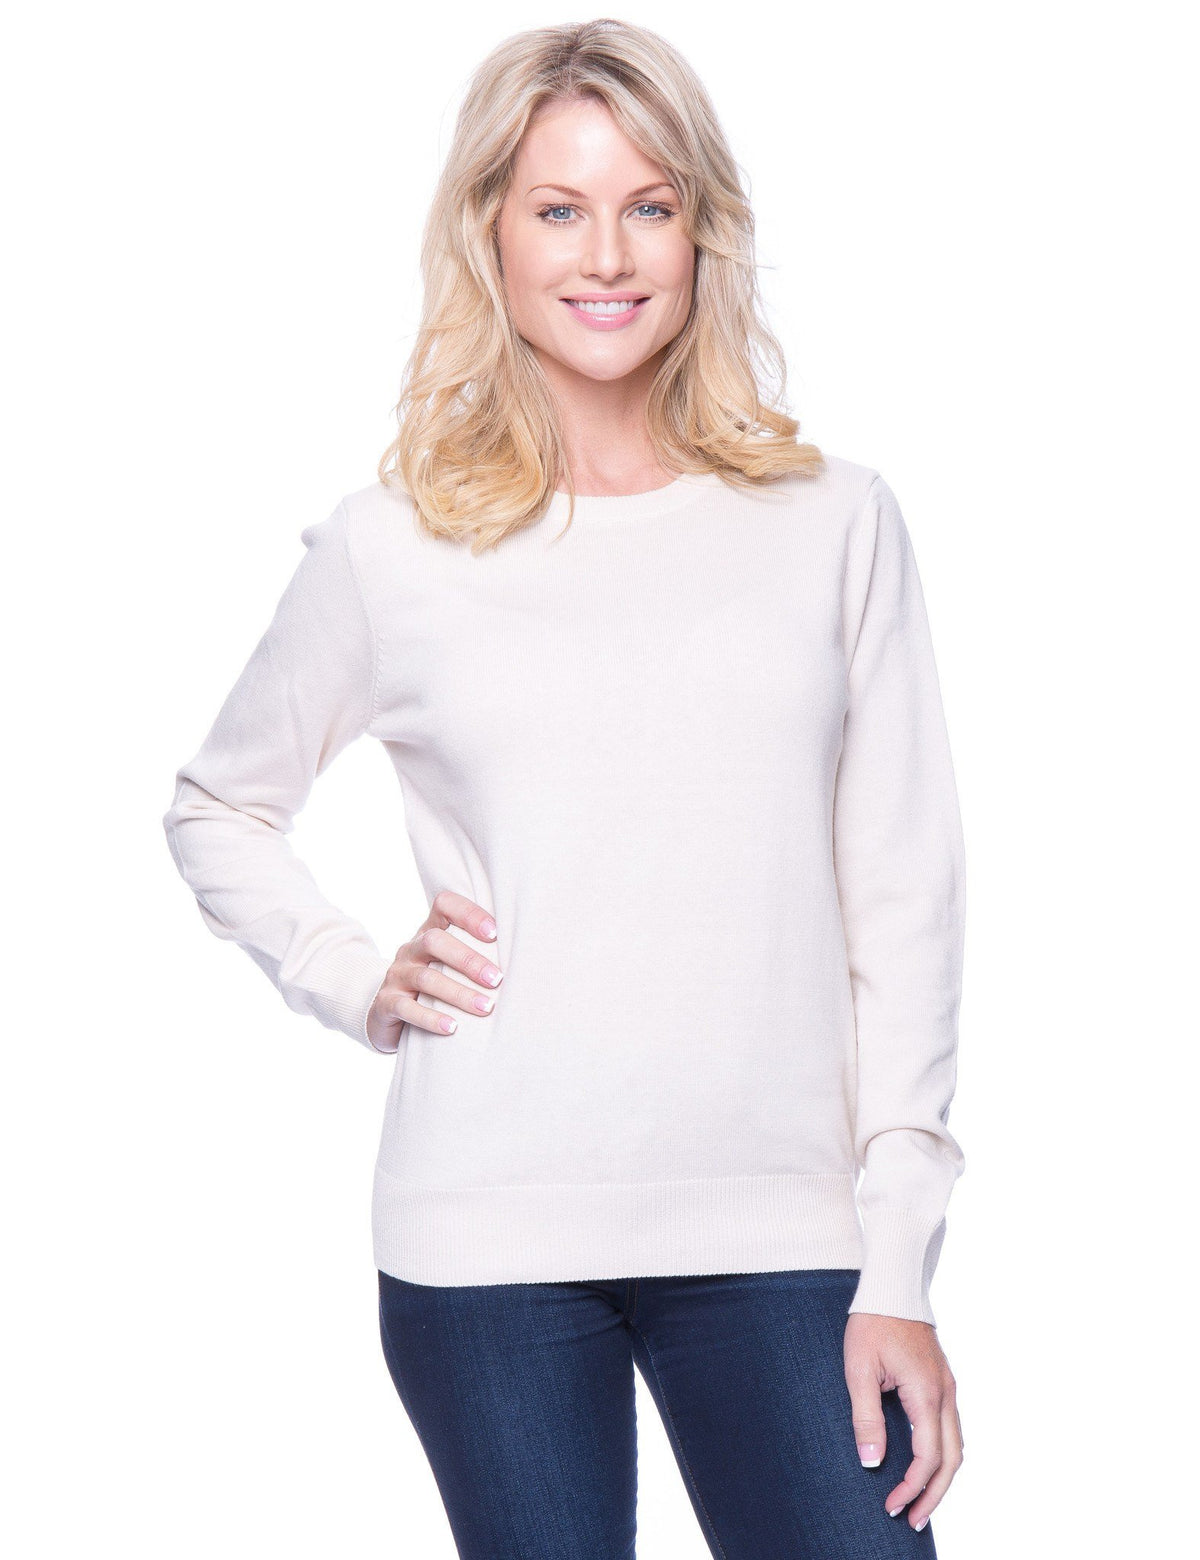 Women's Premium Cotton Crew Neck Sweater - Cream